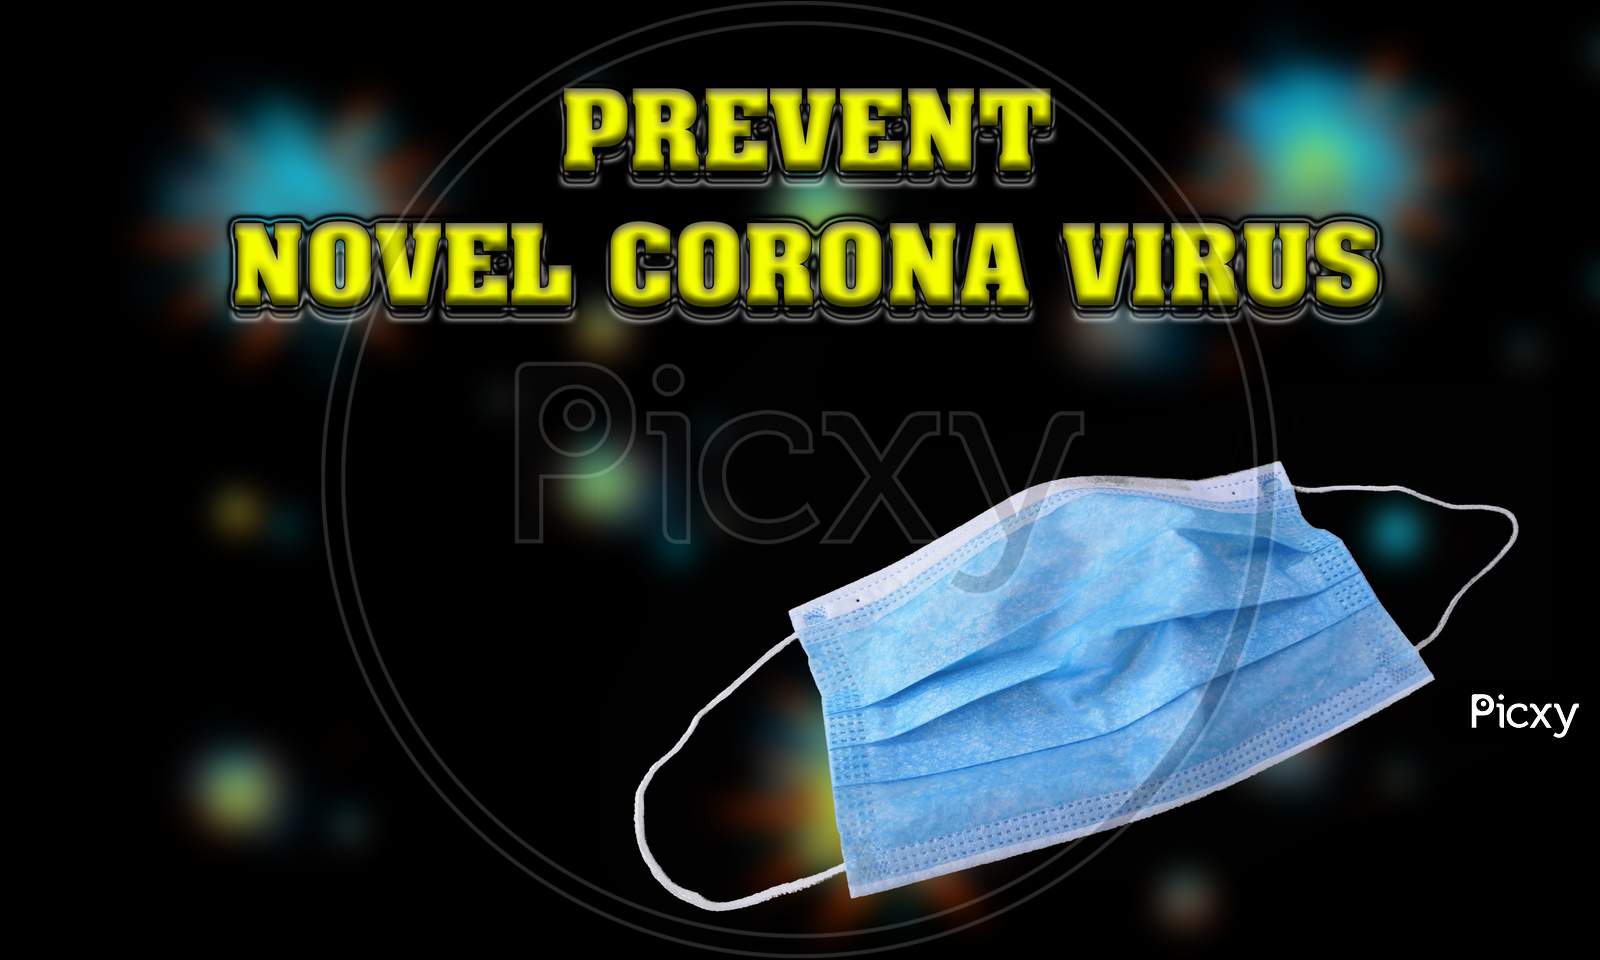 Wear The Mask And Prevent Novel Corona Virus